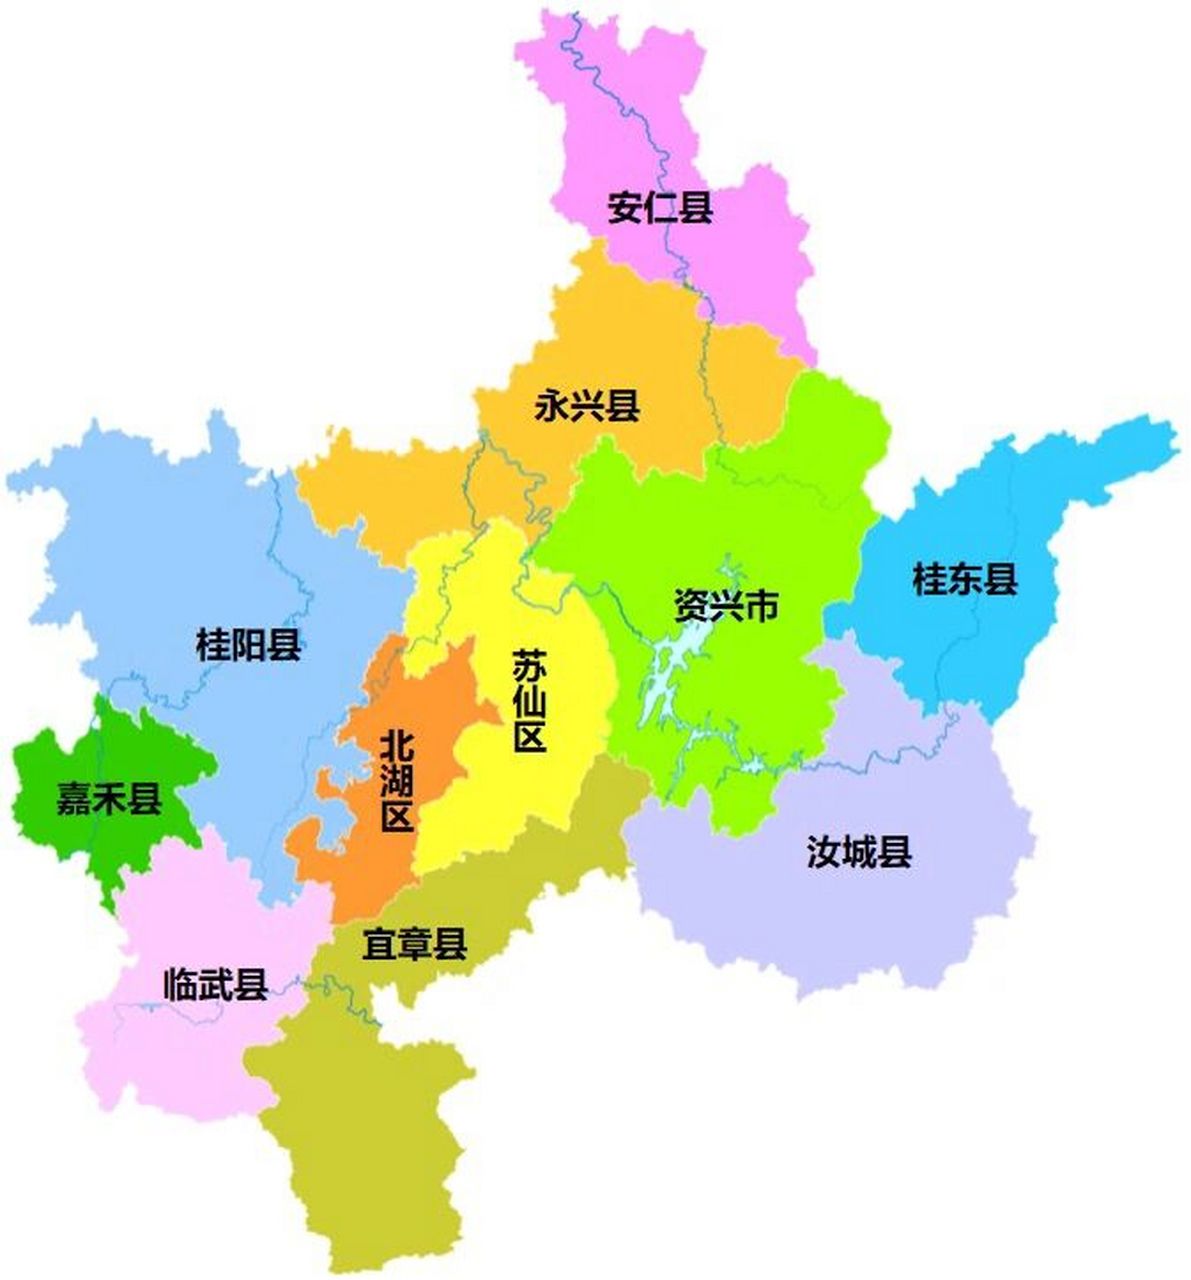 郴州全市划分为 2个区:北湖区,苏仙区; 8个县:桂阳县,宜章县,永兴